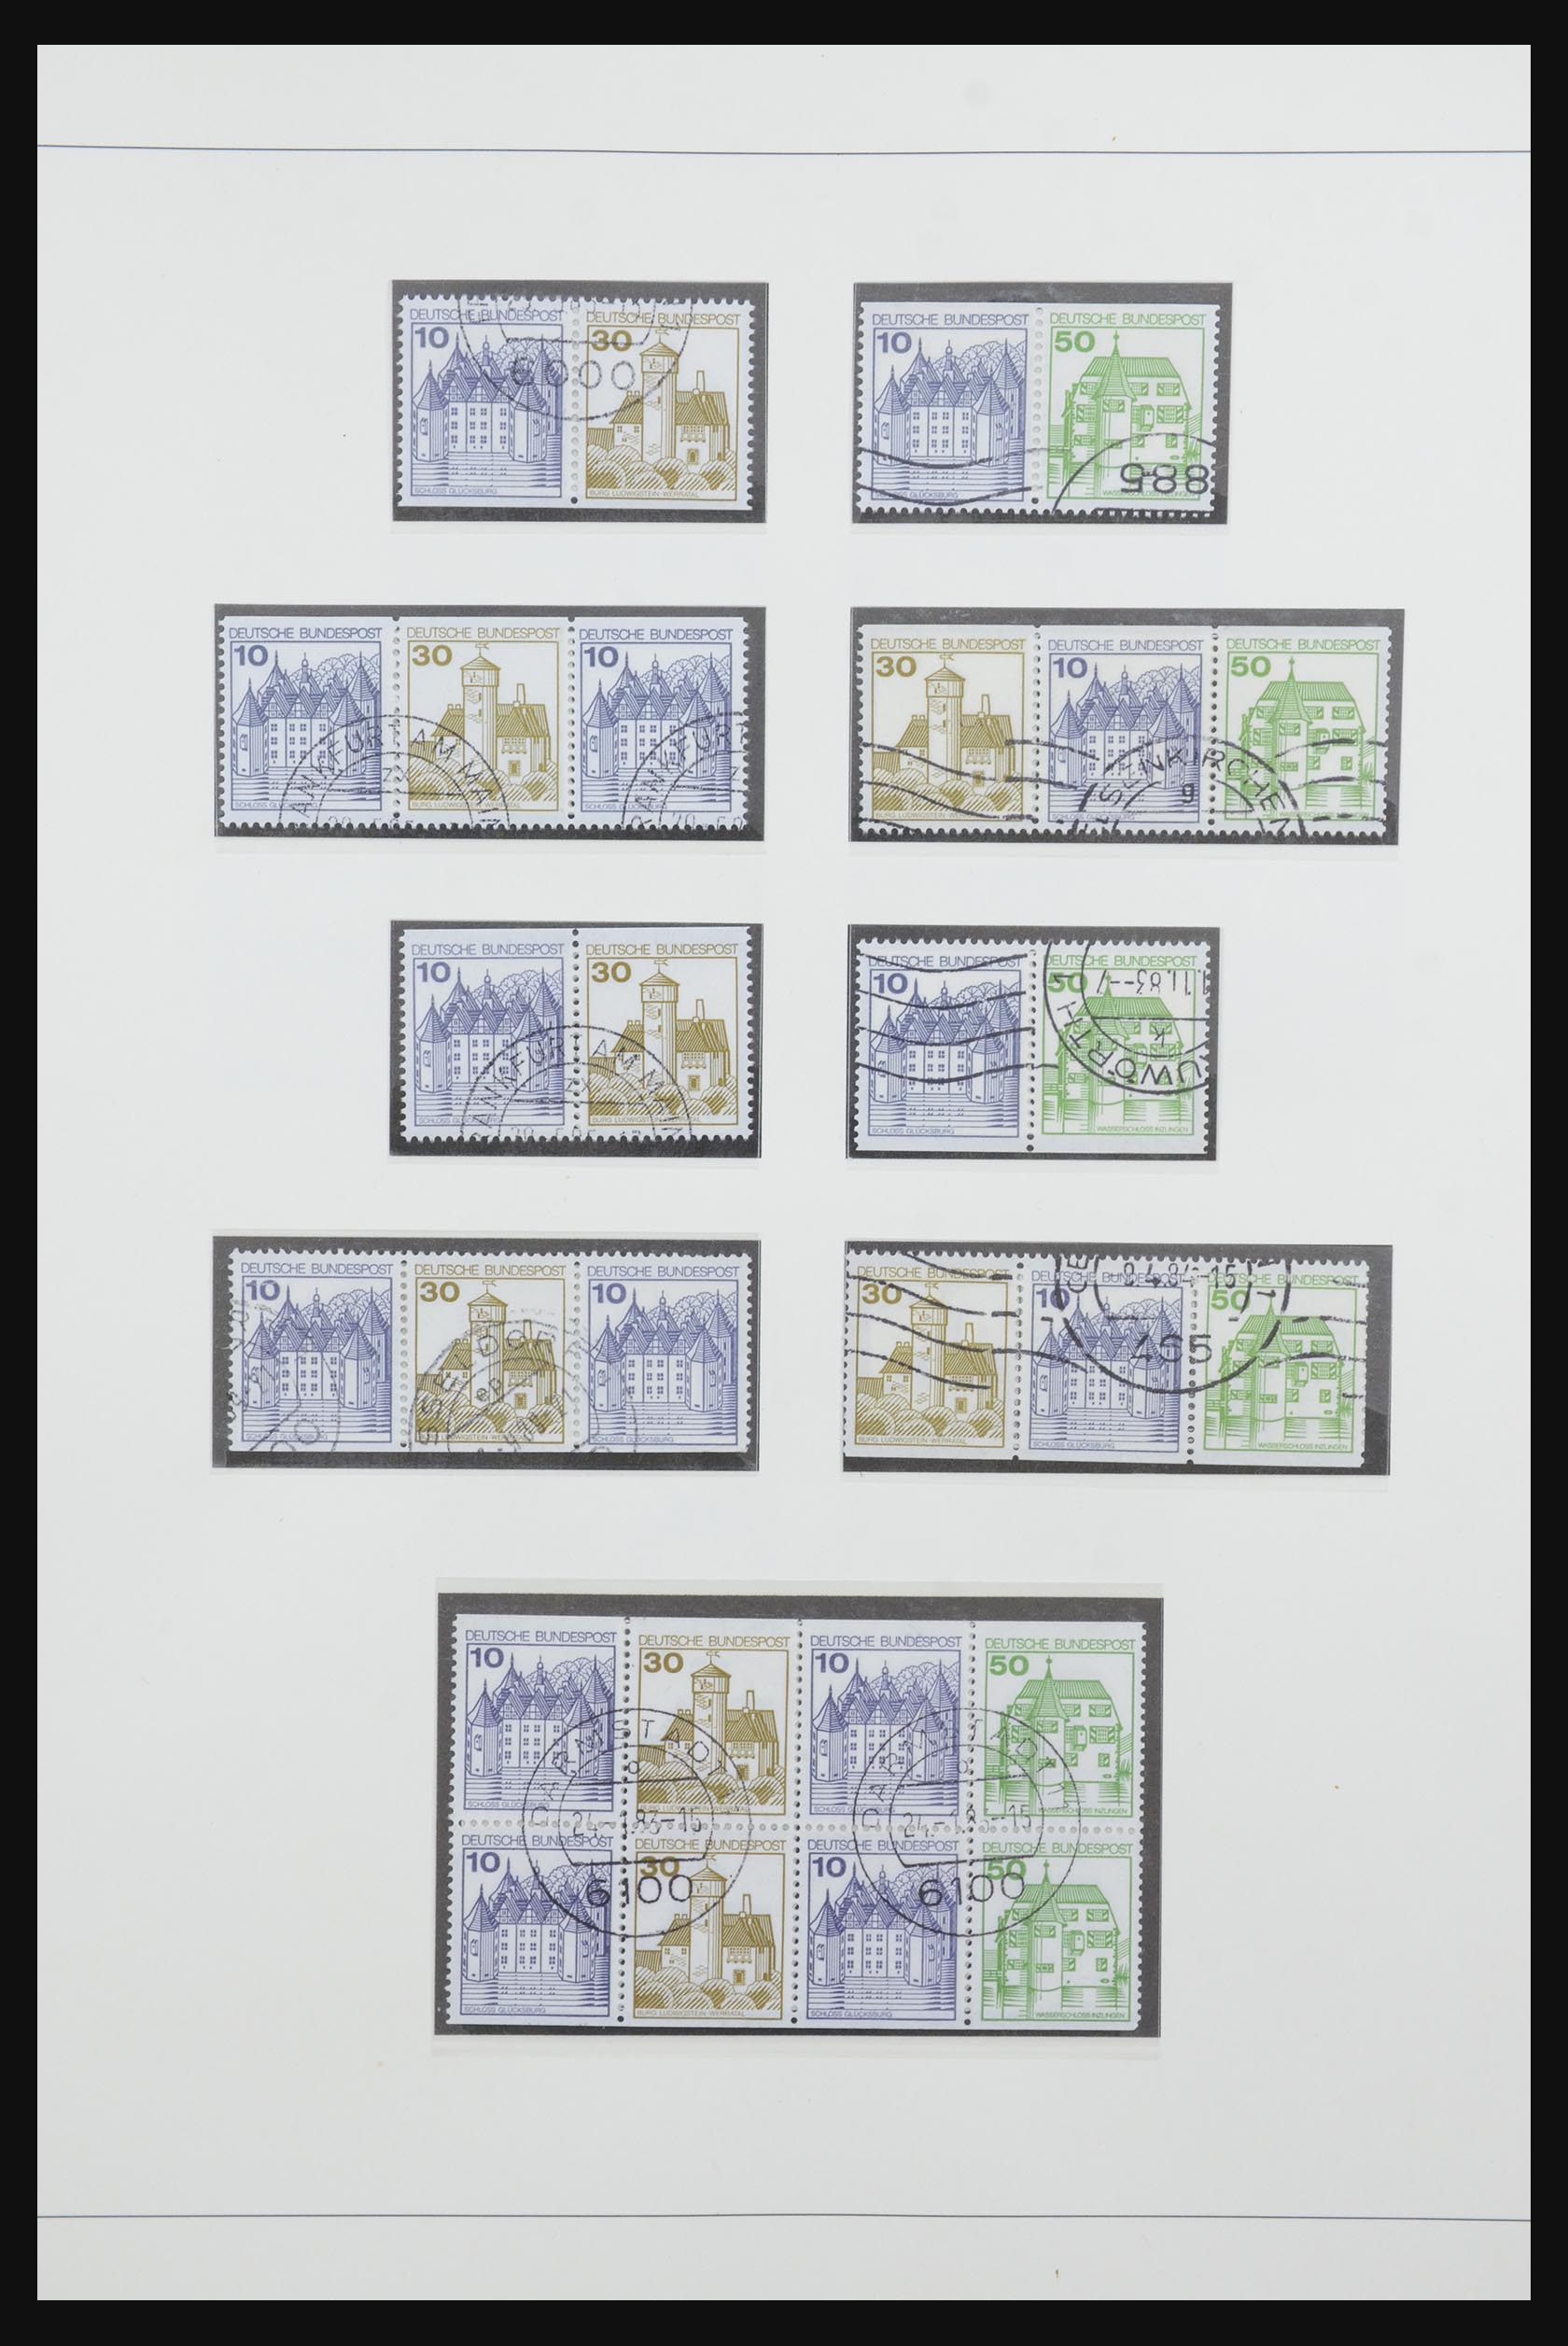 31842 062 - 31842 Bundespost combinations 1951-2003.